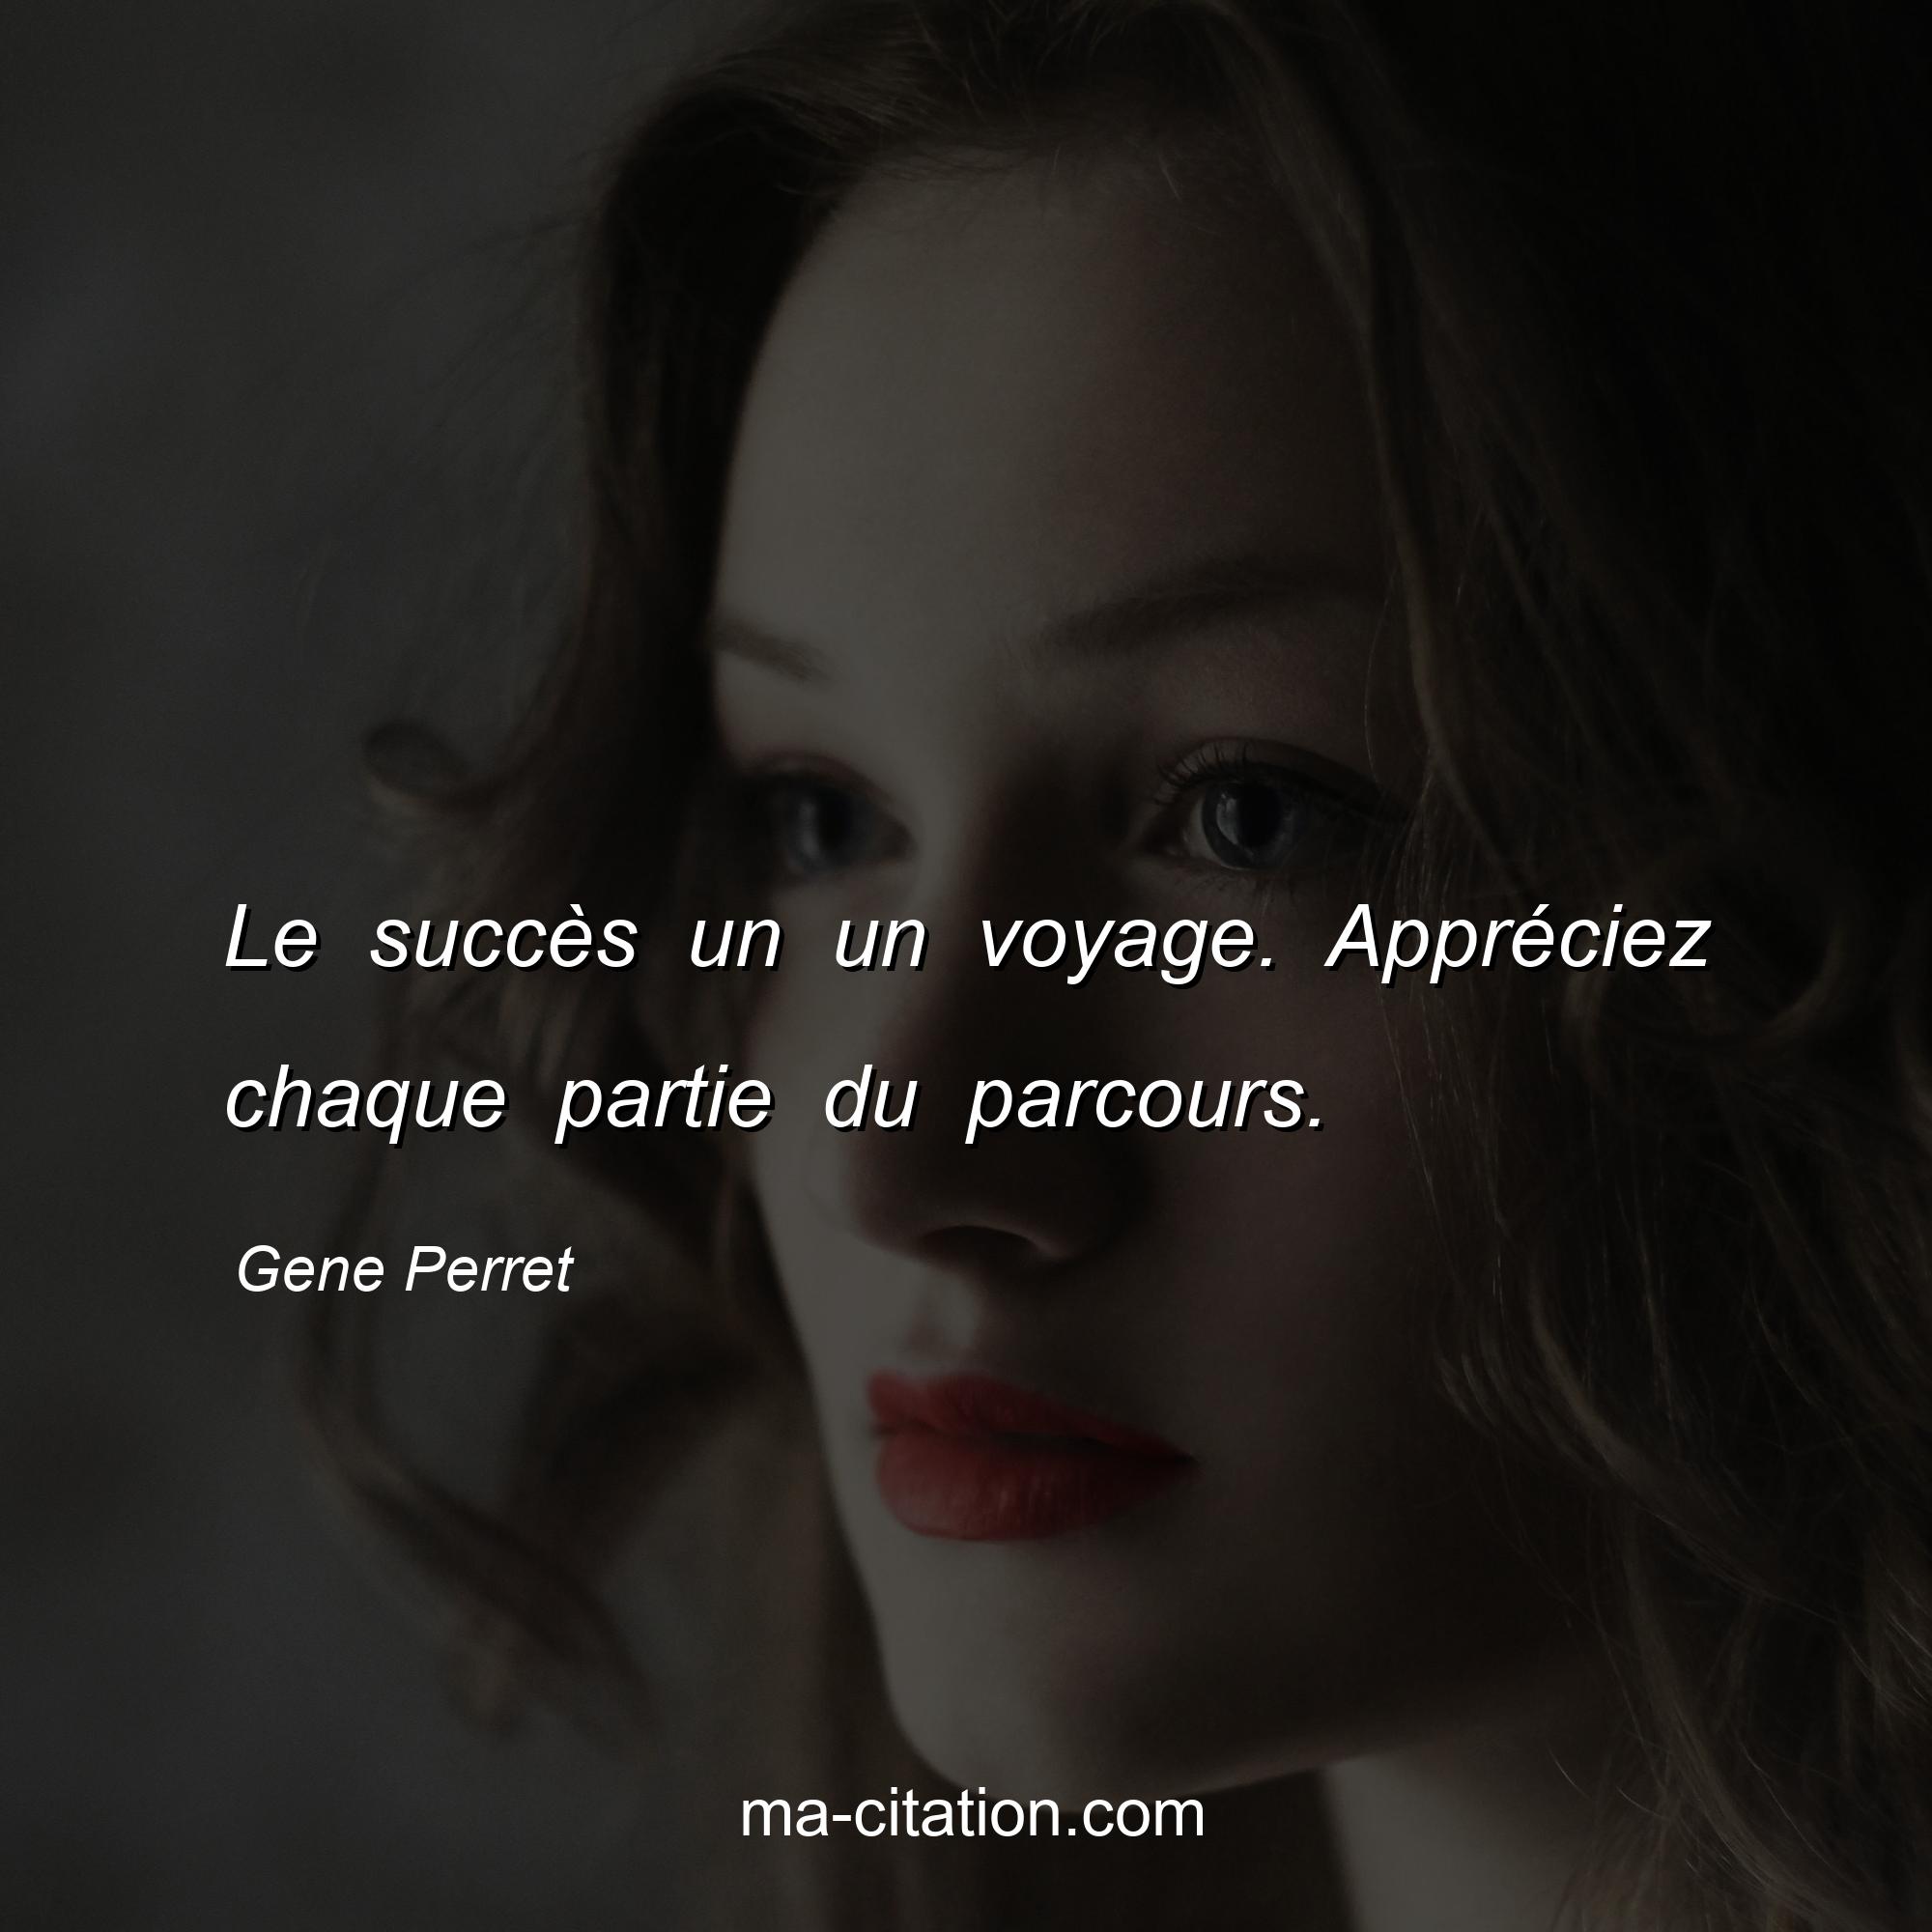 Gene Perret : Le succès un un voyage. Appréciez chaque partie du parcours.